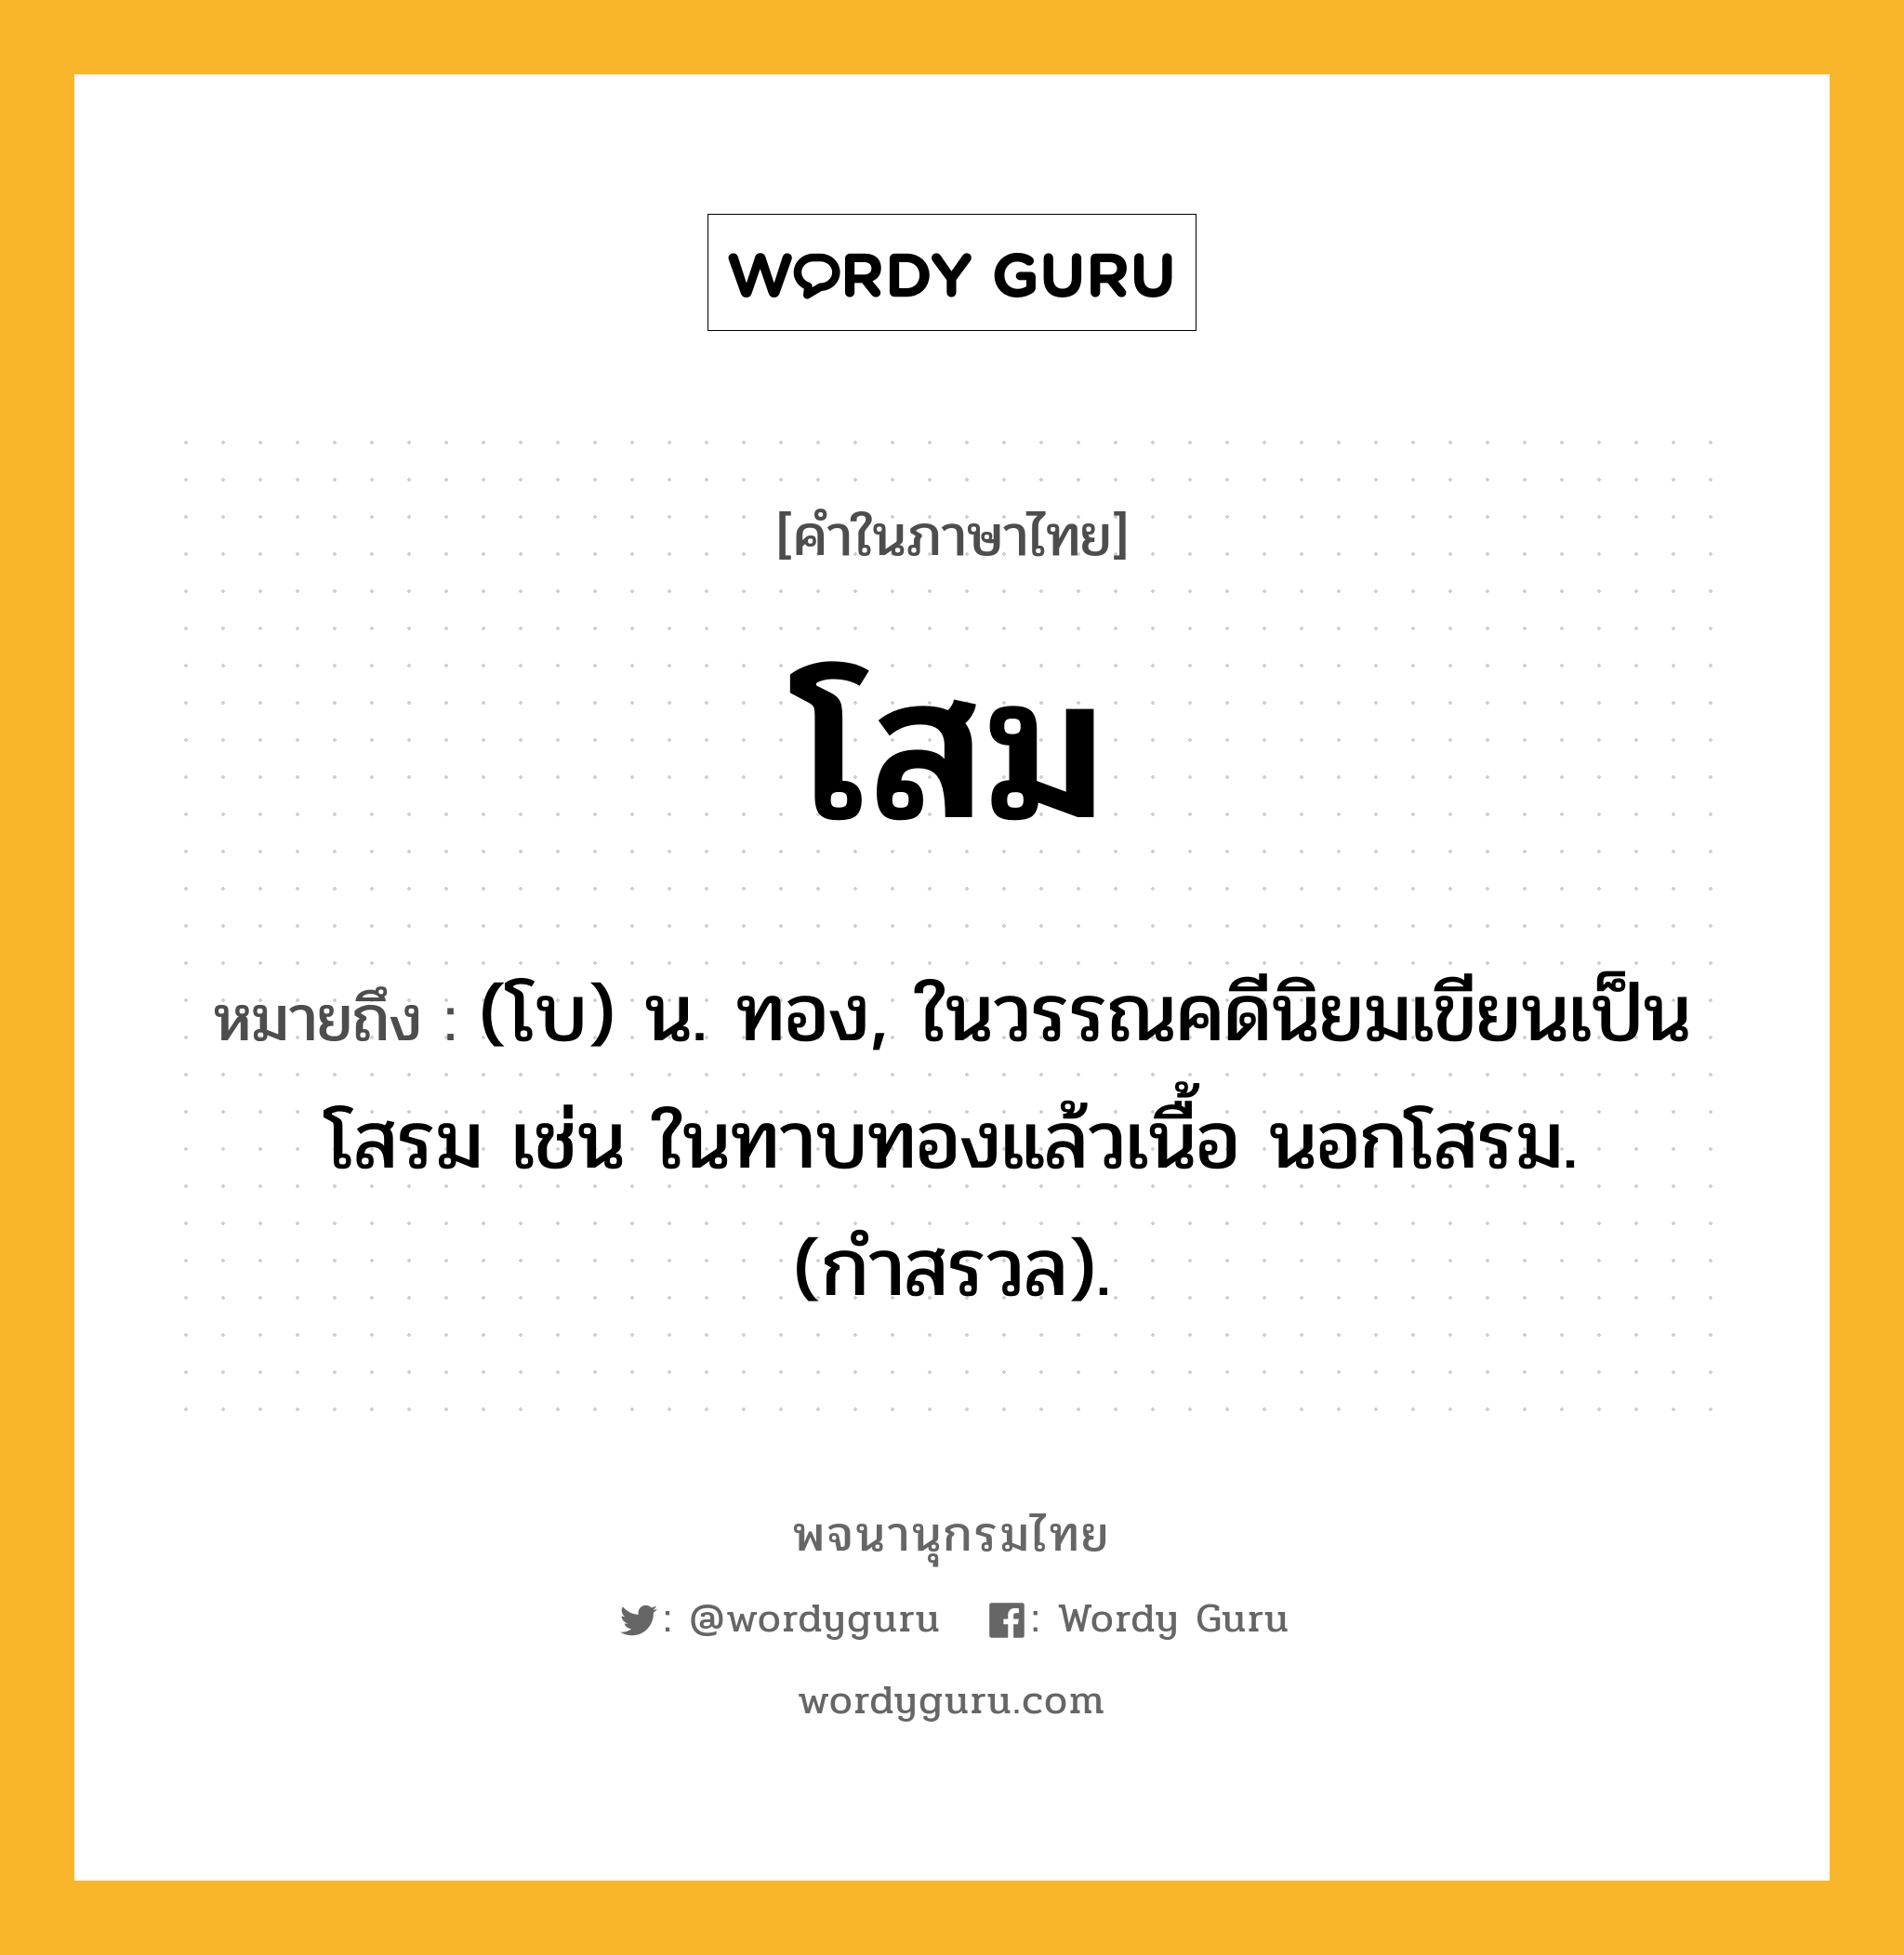 โสม ความหมาย หมายถึงอะไร?, คำในภาษาไทย โสม หมายถึง (โบ) น. ทอง, ในวรรณคดีนิยมเขียนเป็น โสรม เช่น ในทาบทองแล้วเนื้อ นอกโสรม. (กำสรวล).